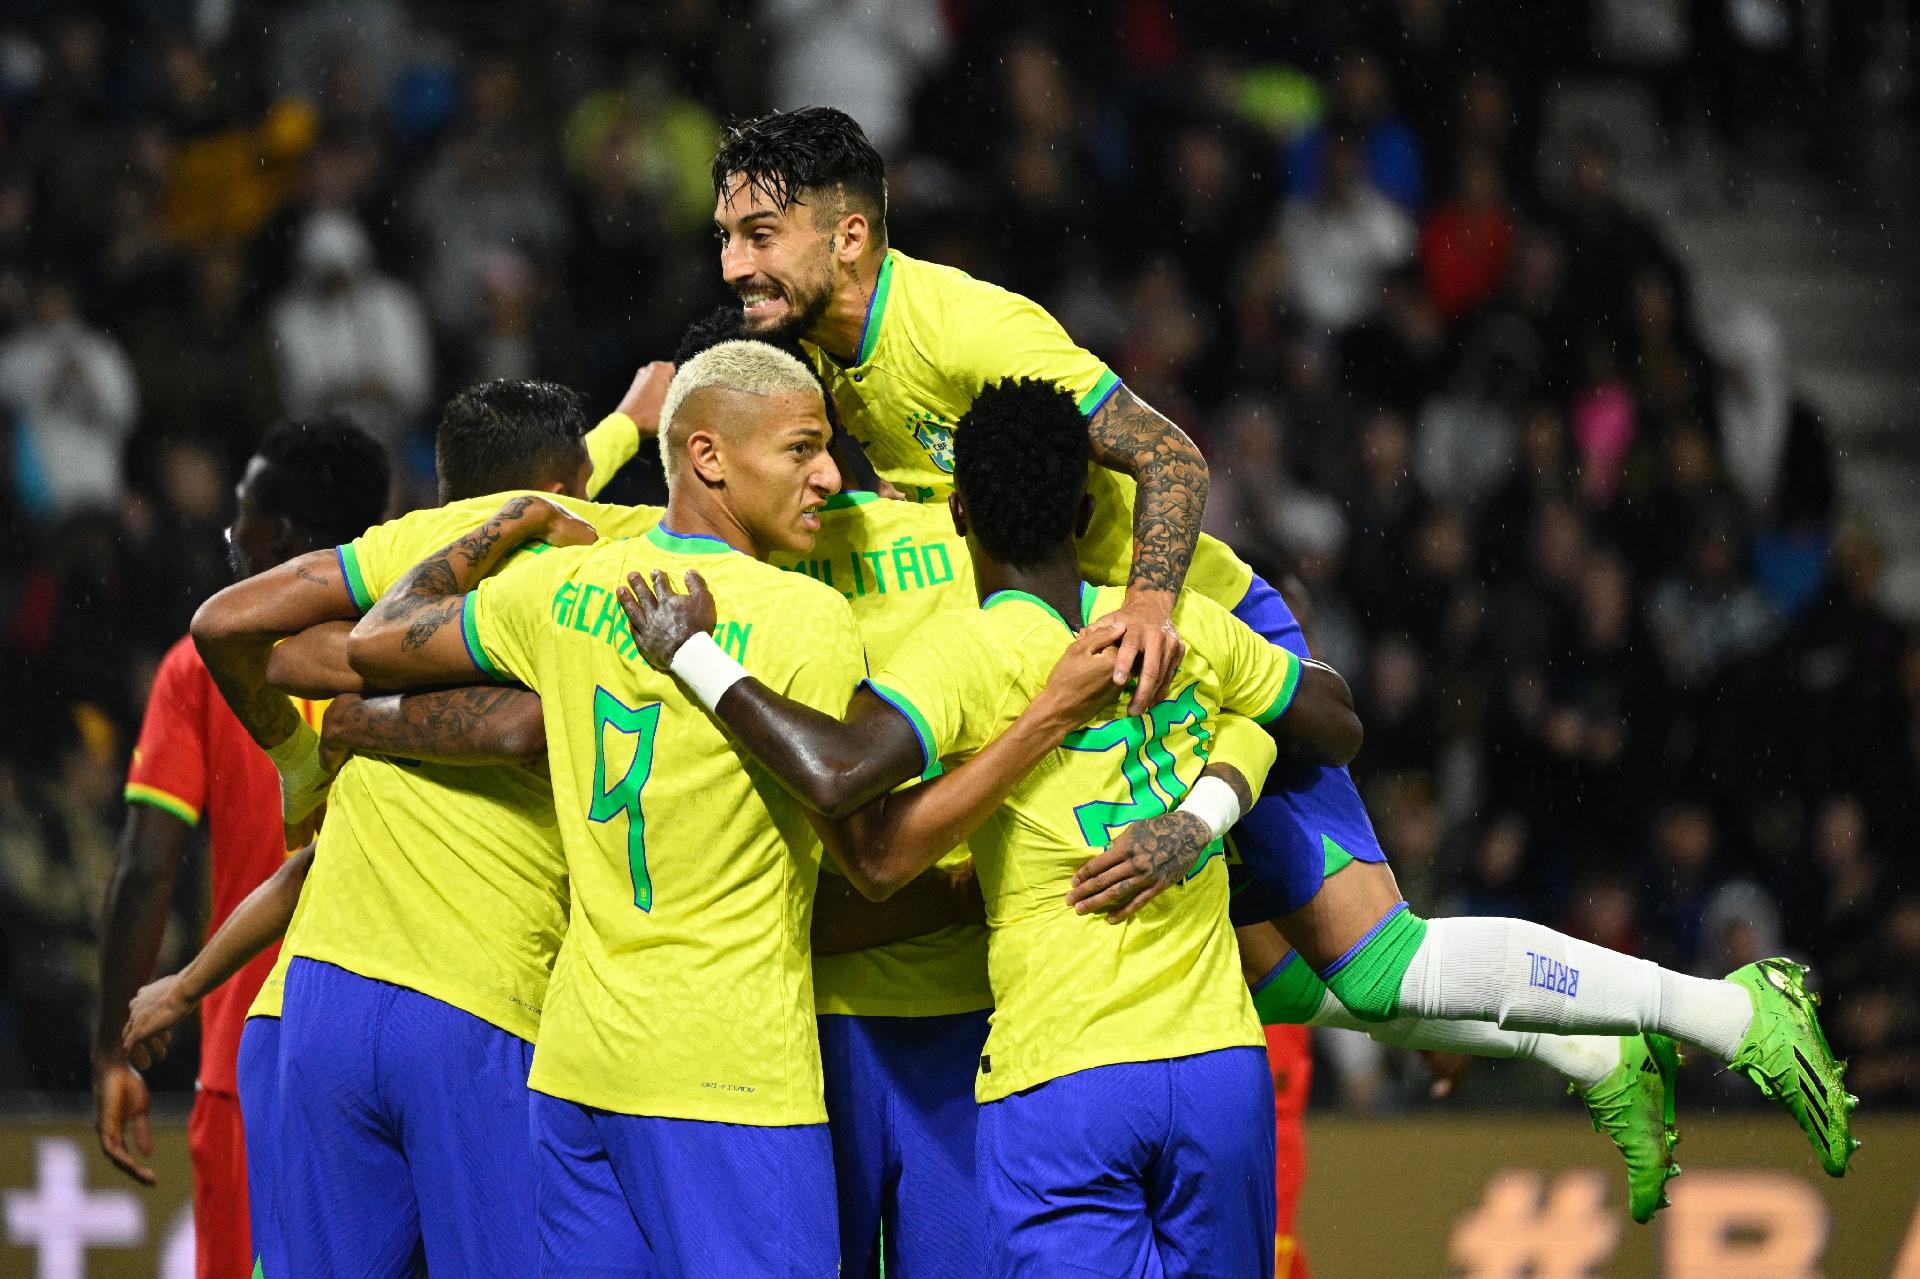 Imprensa francesa celebra retorno do jogo bonito do Brasil após